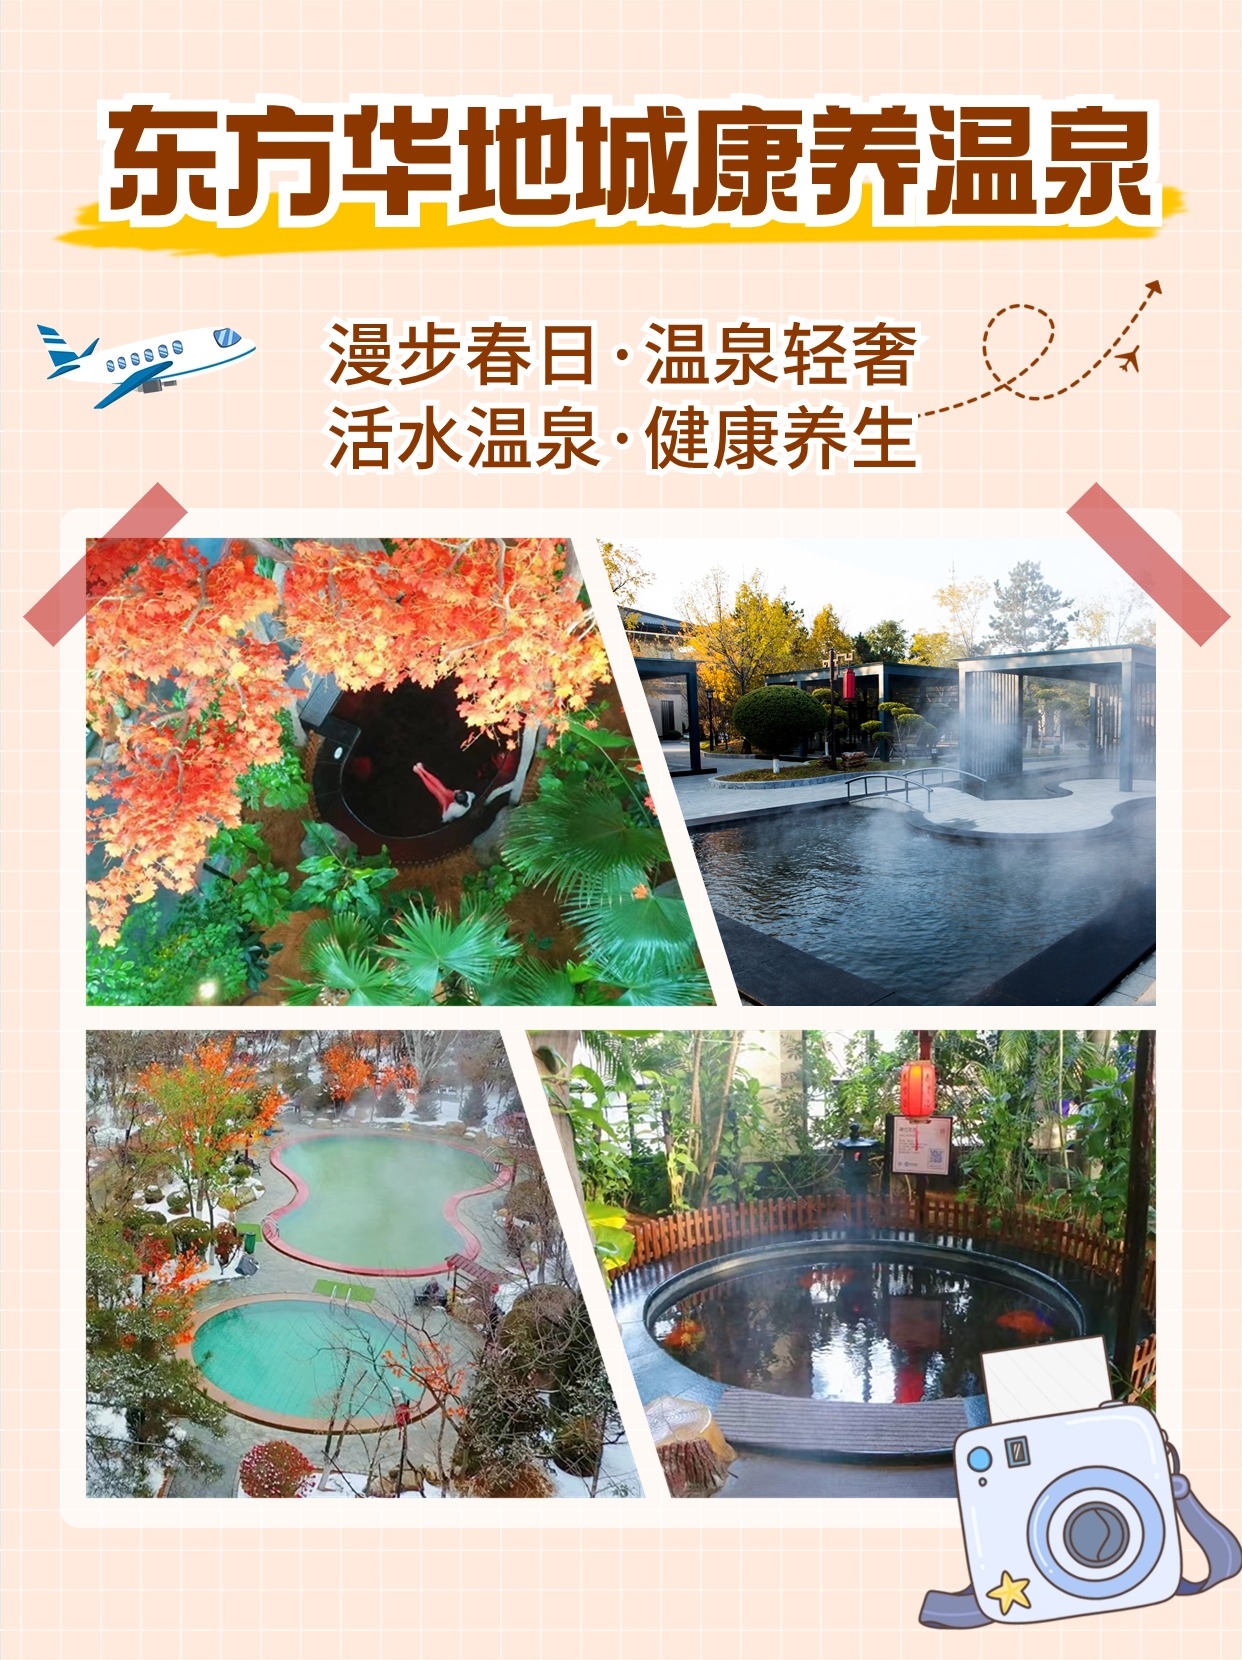 春日的诗意与温暖是东方华地城康养温泉给的